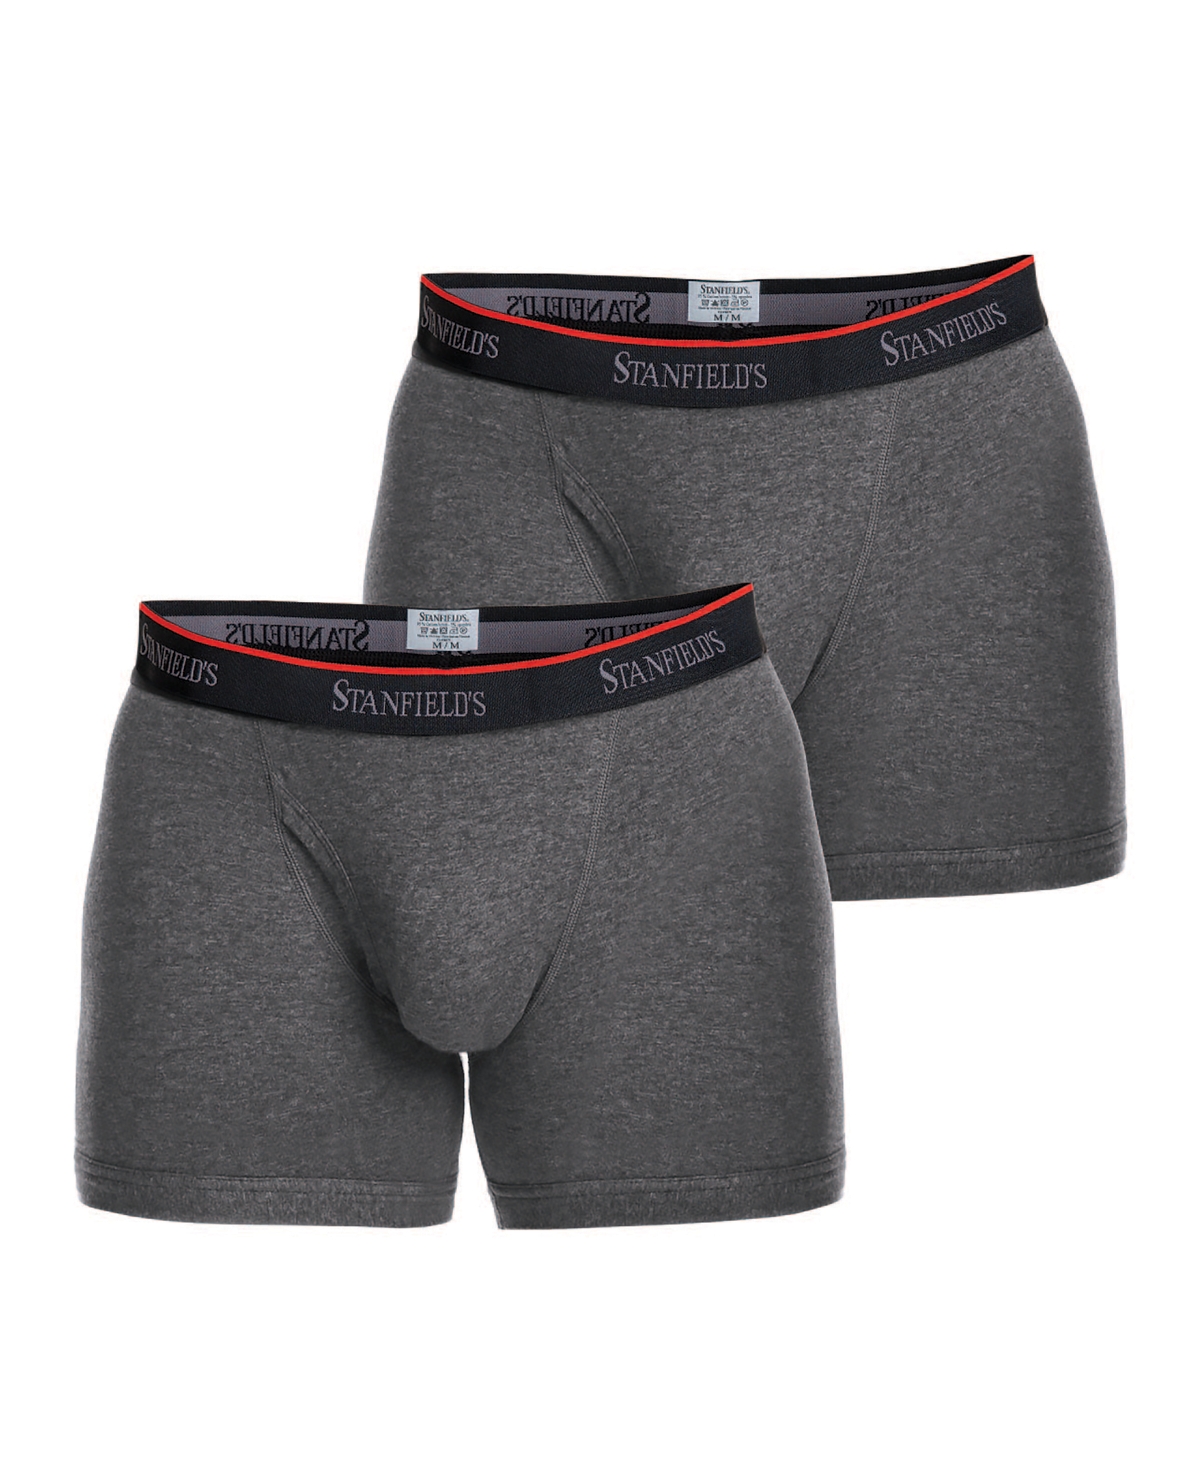 Stanfield's Cotton Stretch Men's 2 Pack Boxer Brief Underwear In Graphite